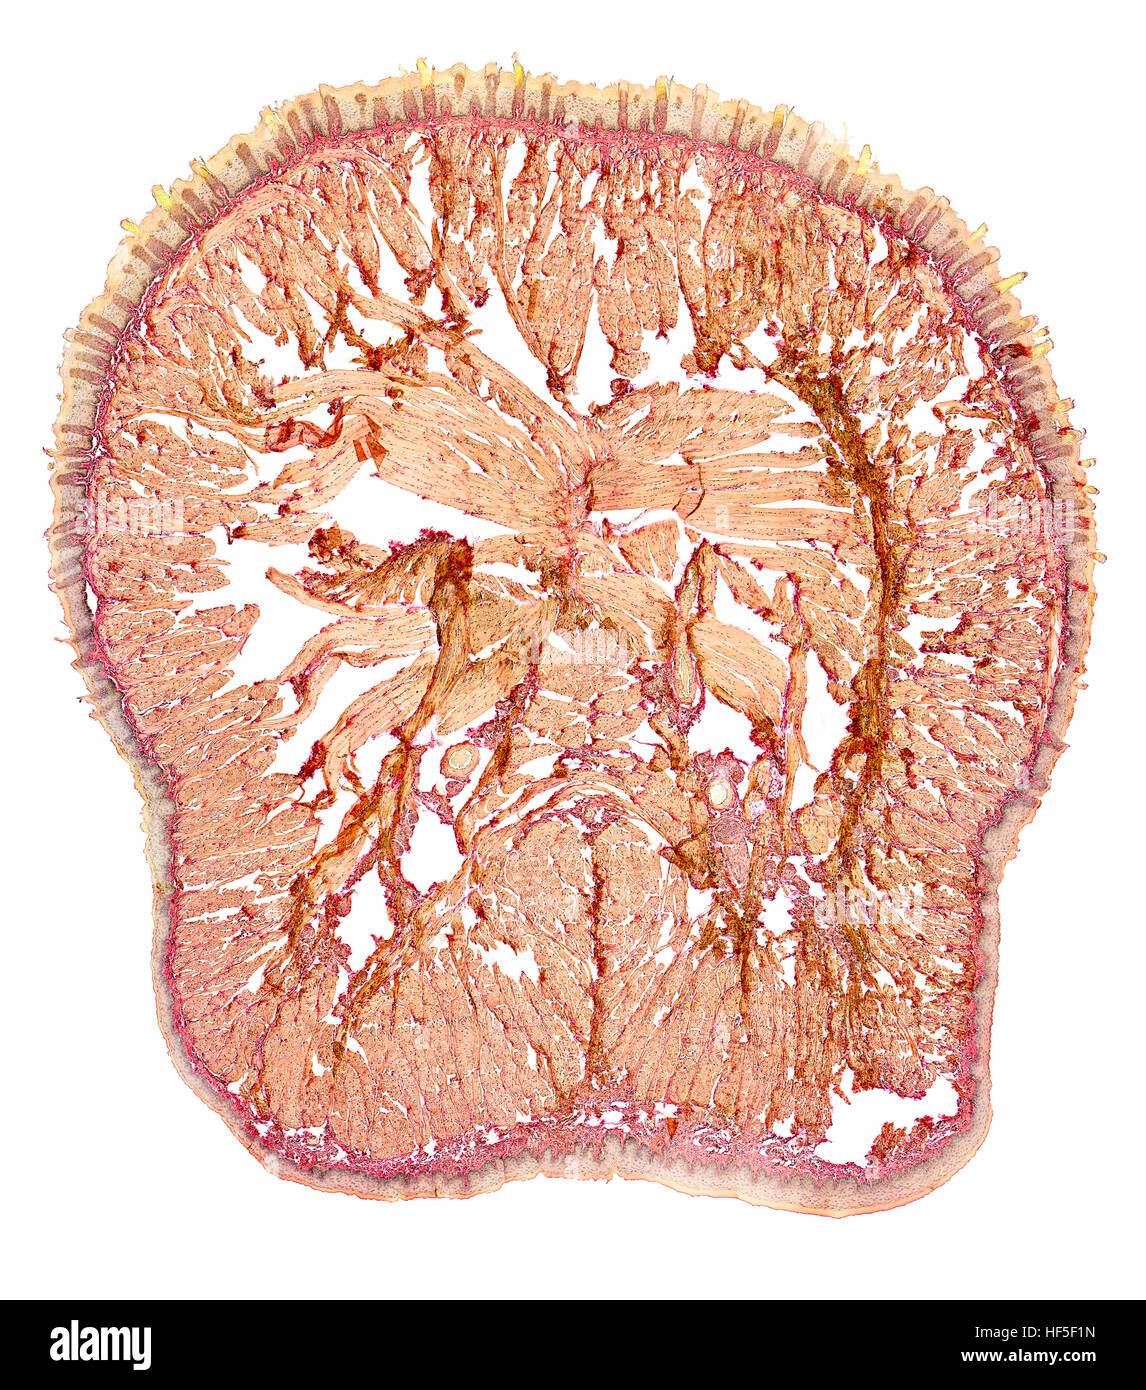 mikroskopisch kleine Querschnitt zeigt die Zunge einer Ratte Stockfoto